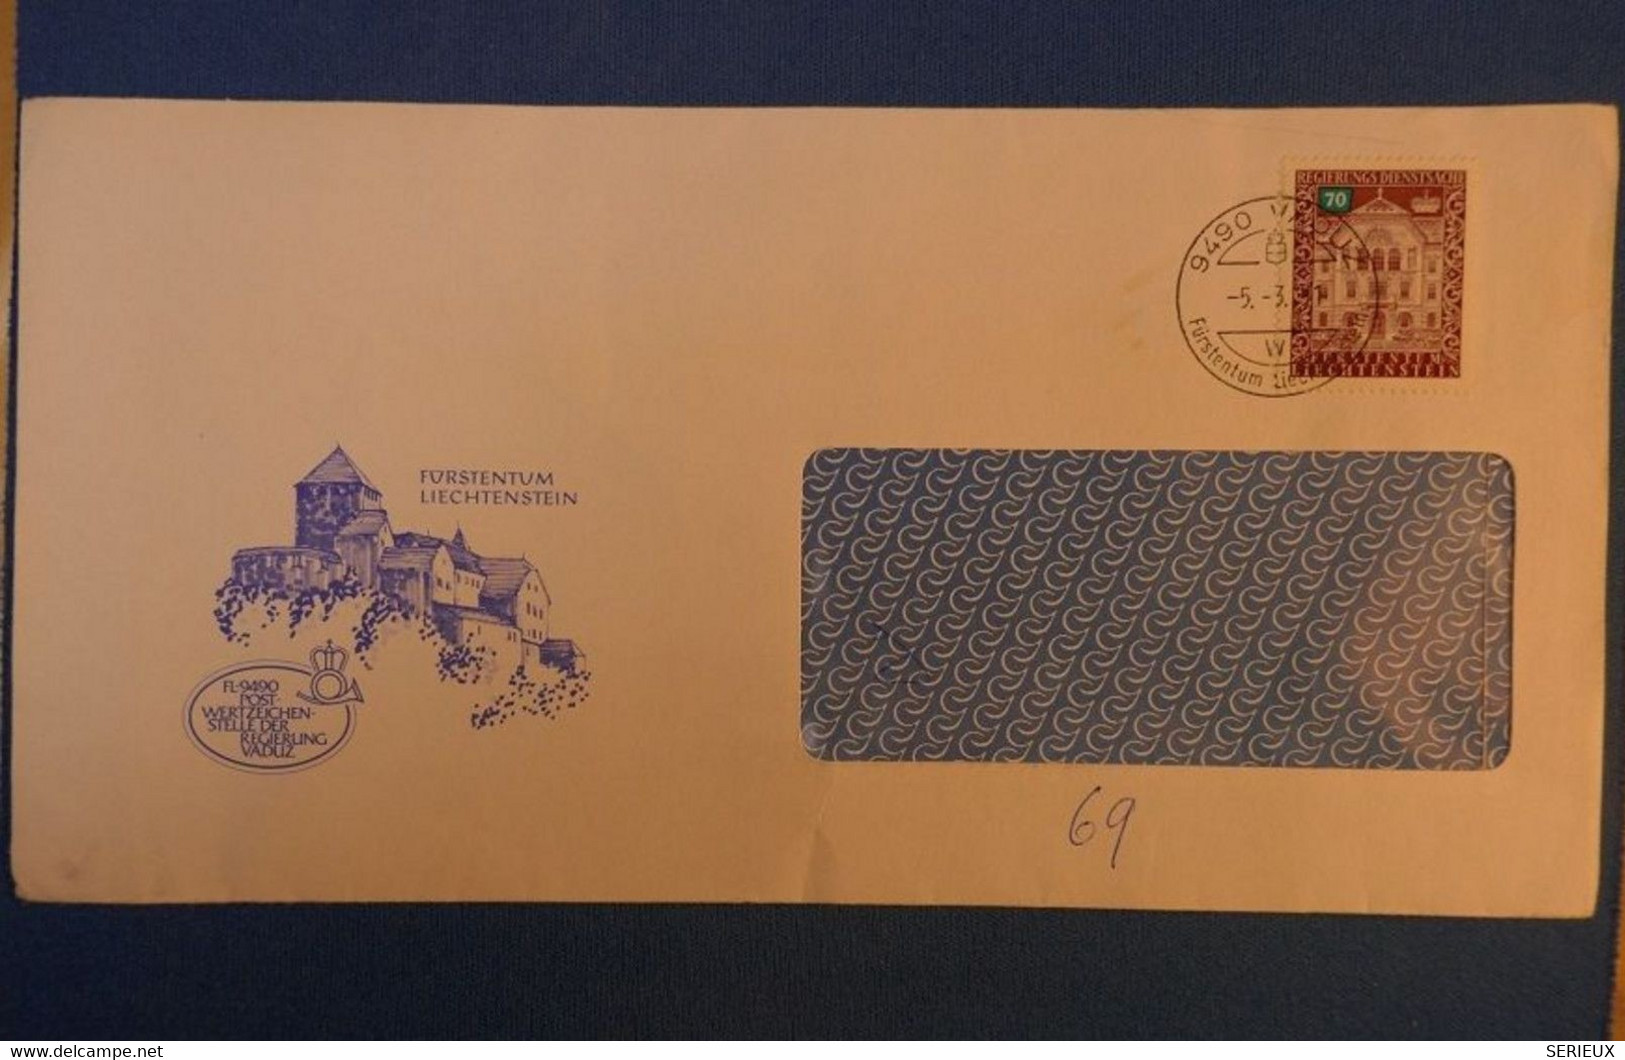 B99 LIECHTENSTEIN BELLE LETTRE A FENETRE 1951 + AFFRANCH. PLAISANT - Lettres & Documents